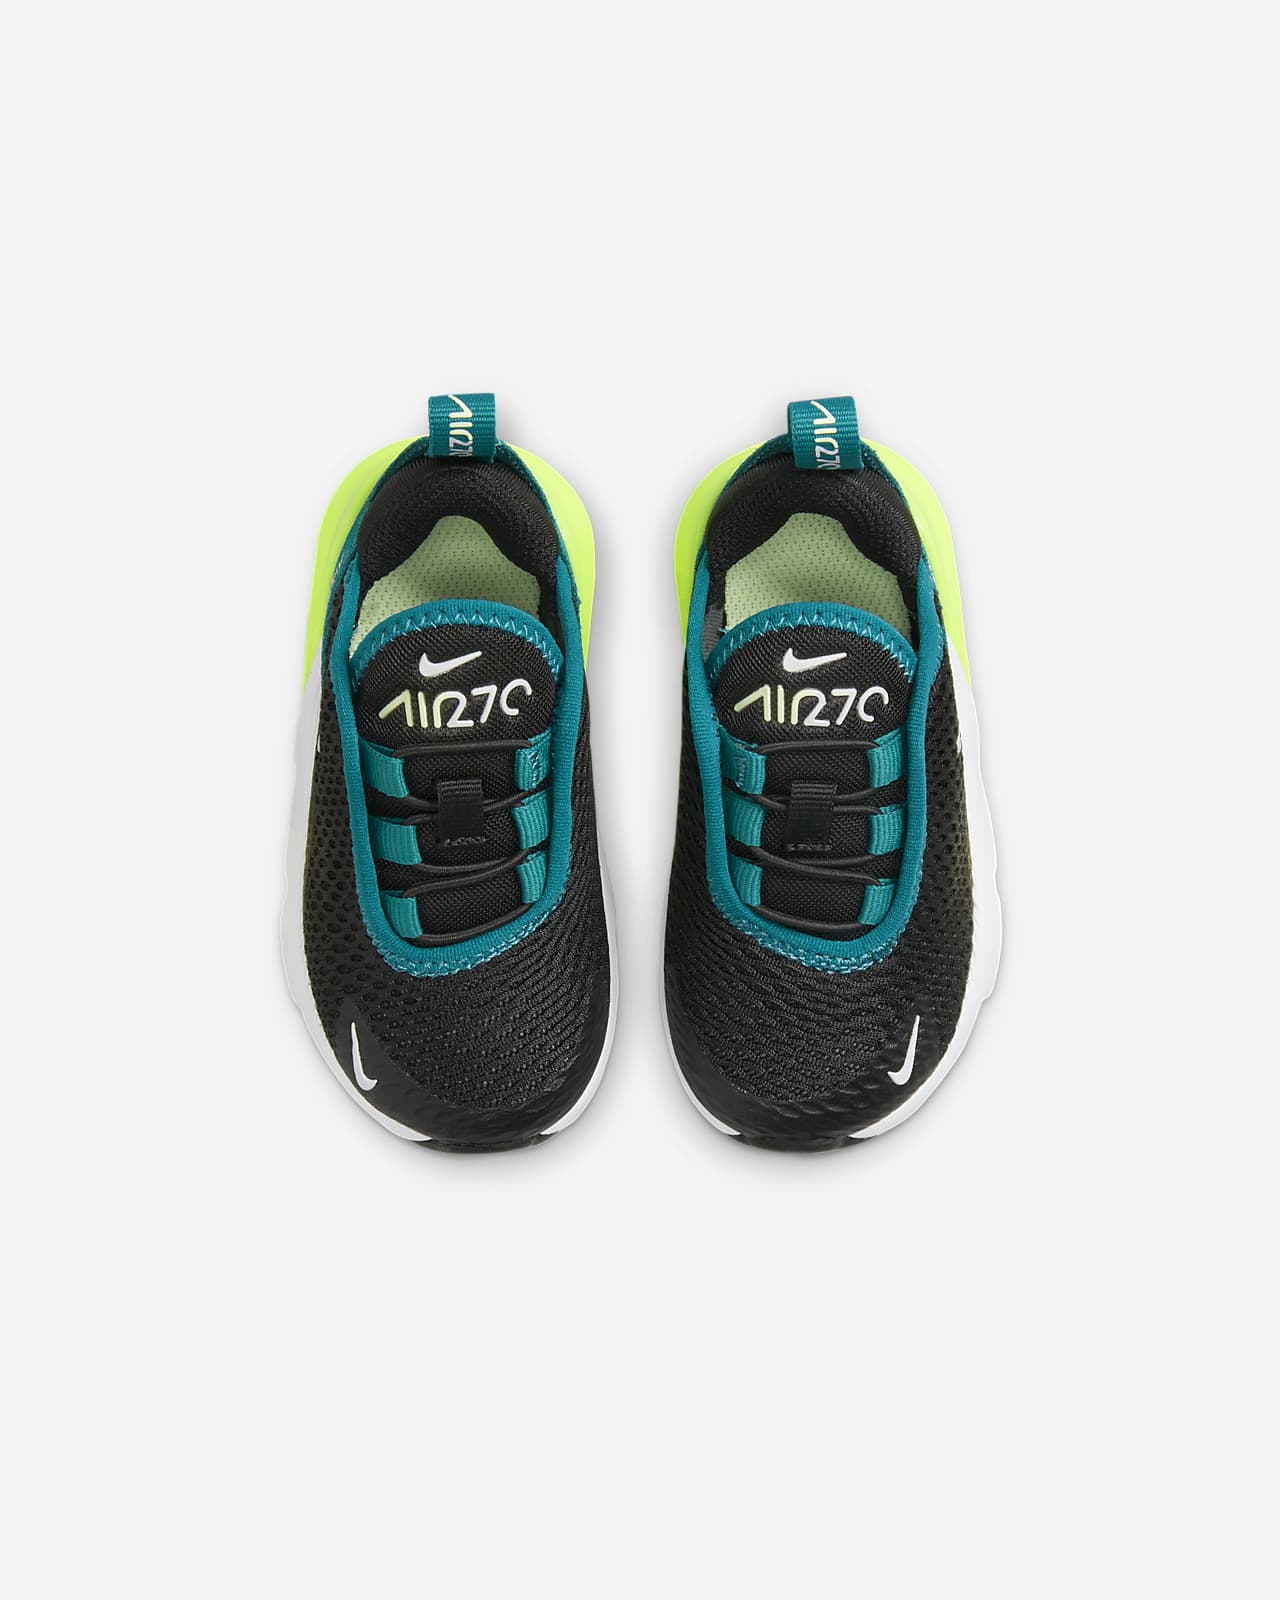 Decepción contrabando Prevención Nike Air Max 270 Zapatillas - Bebé e infantil. Nike ES